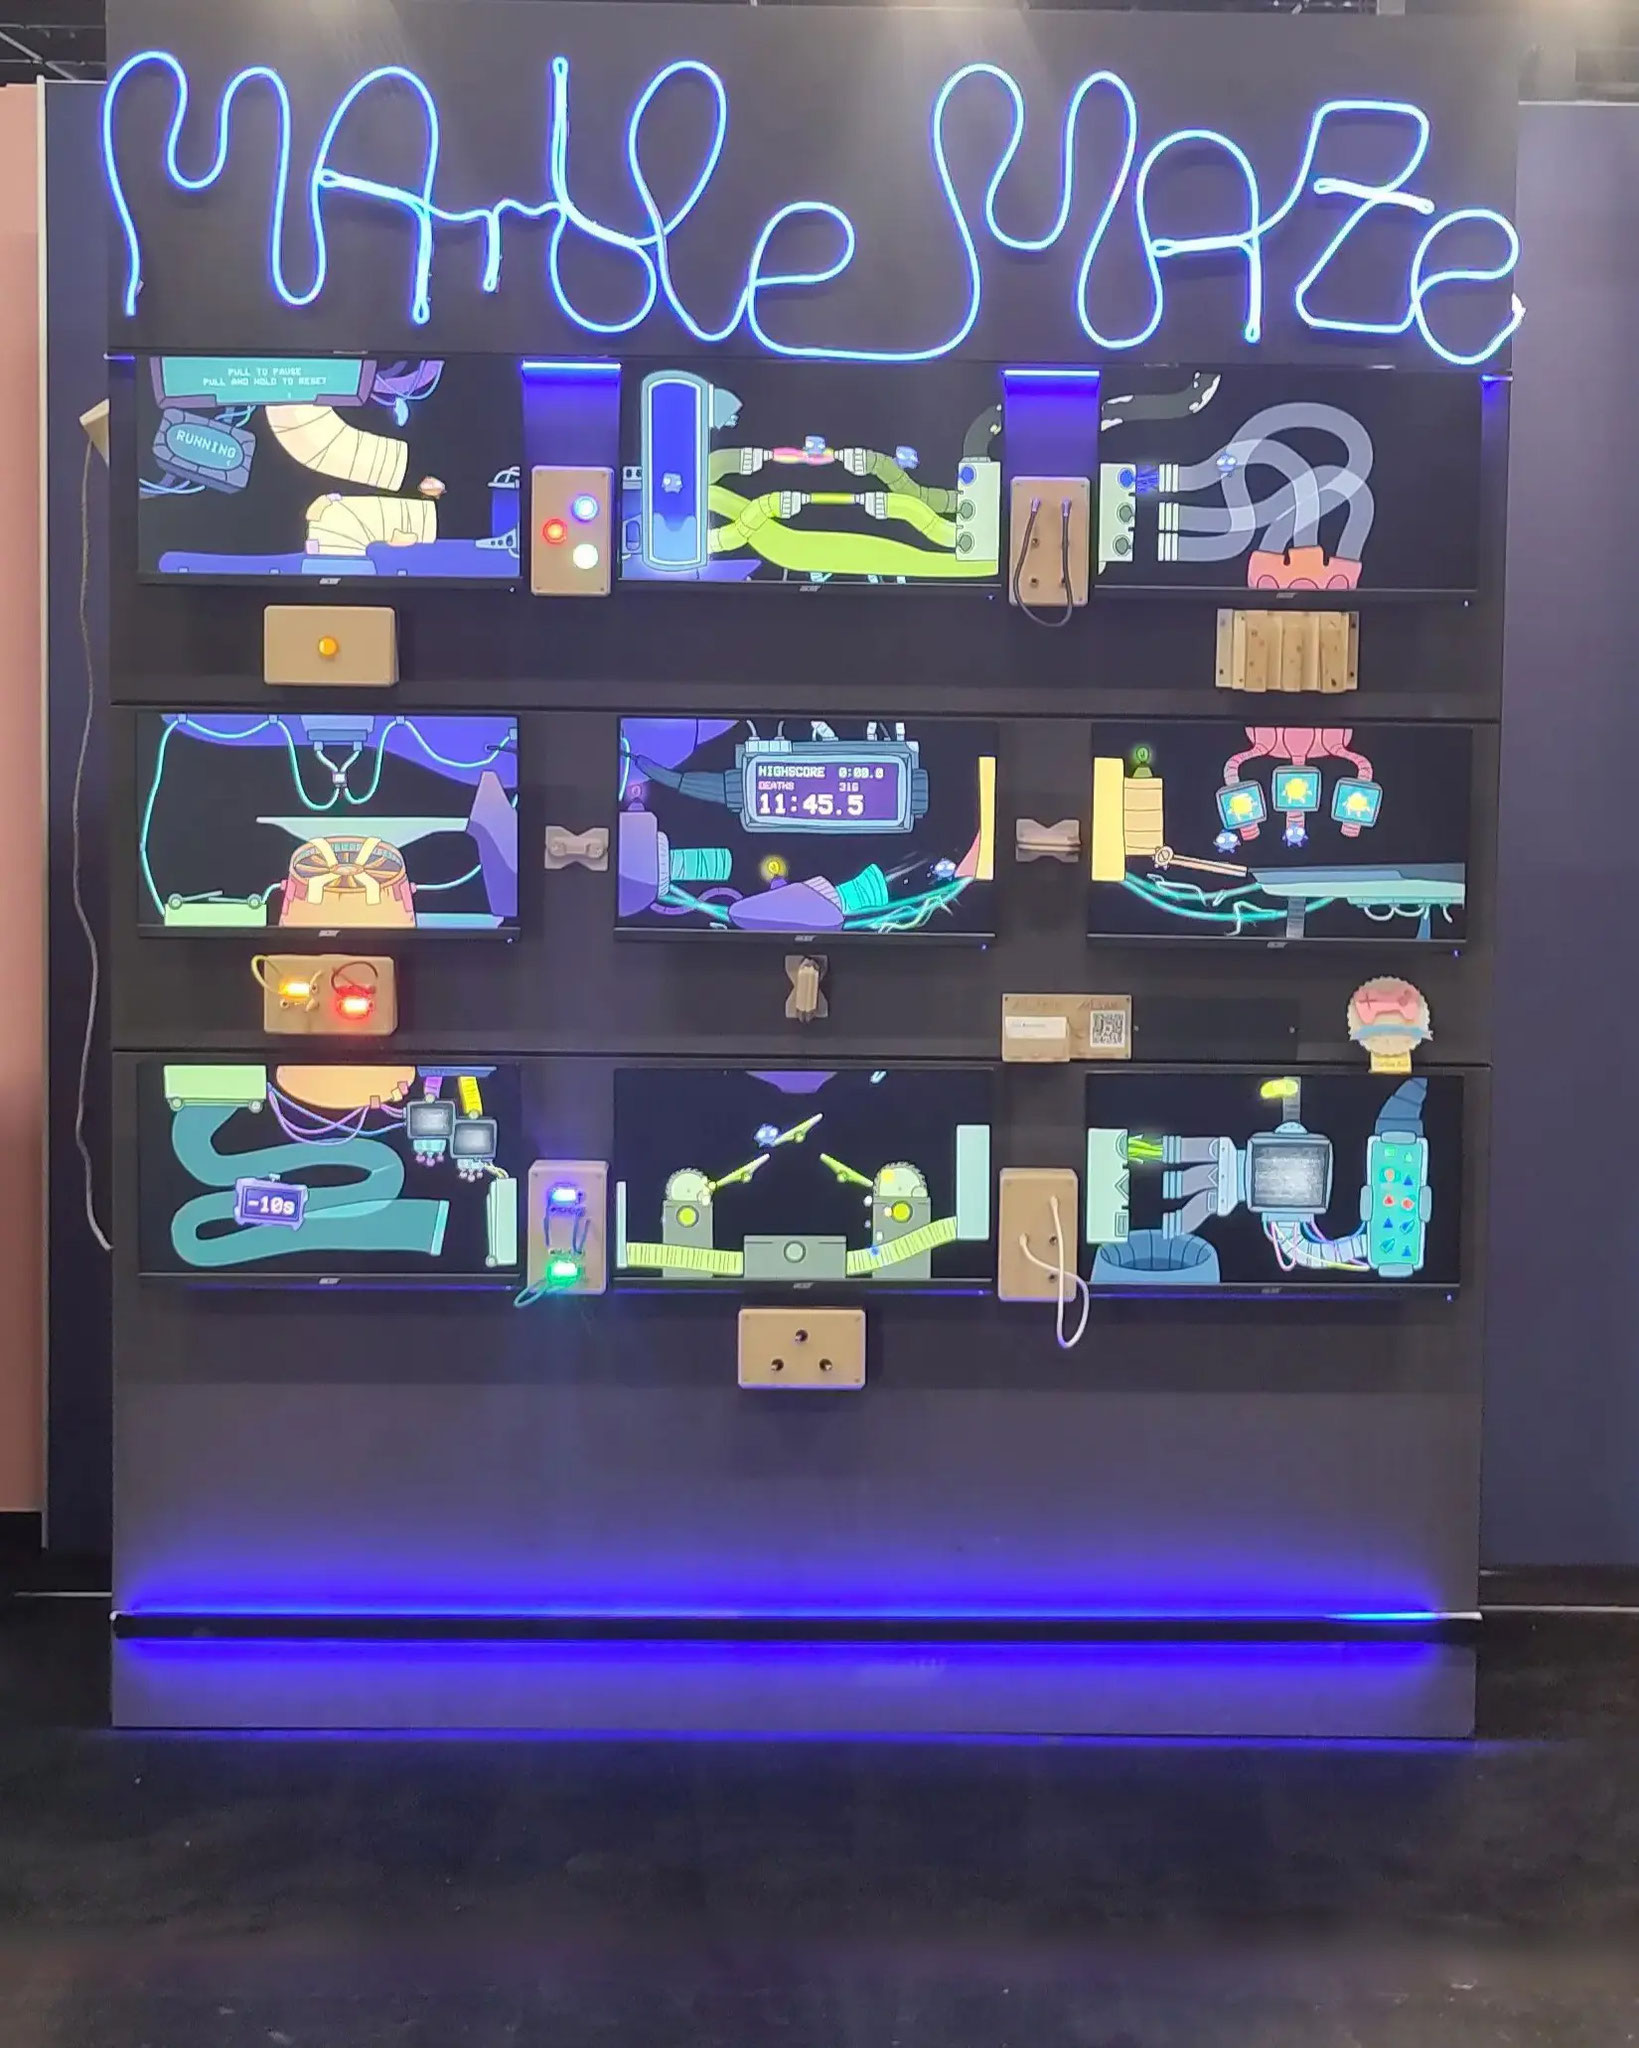 Beste Innovation und Technologie: "Marble Maze" von Fox Assembly ist eine Kombi aus Game und interaktive Kunst-Installation